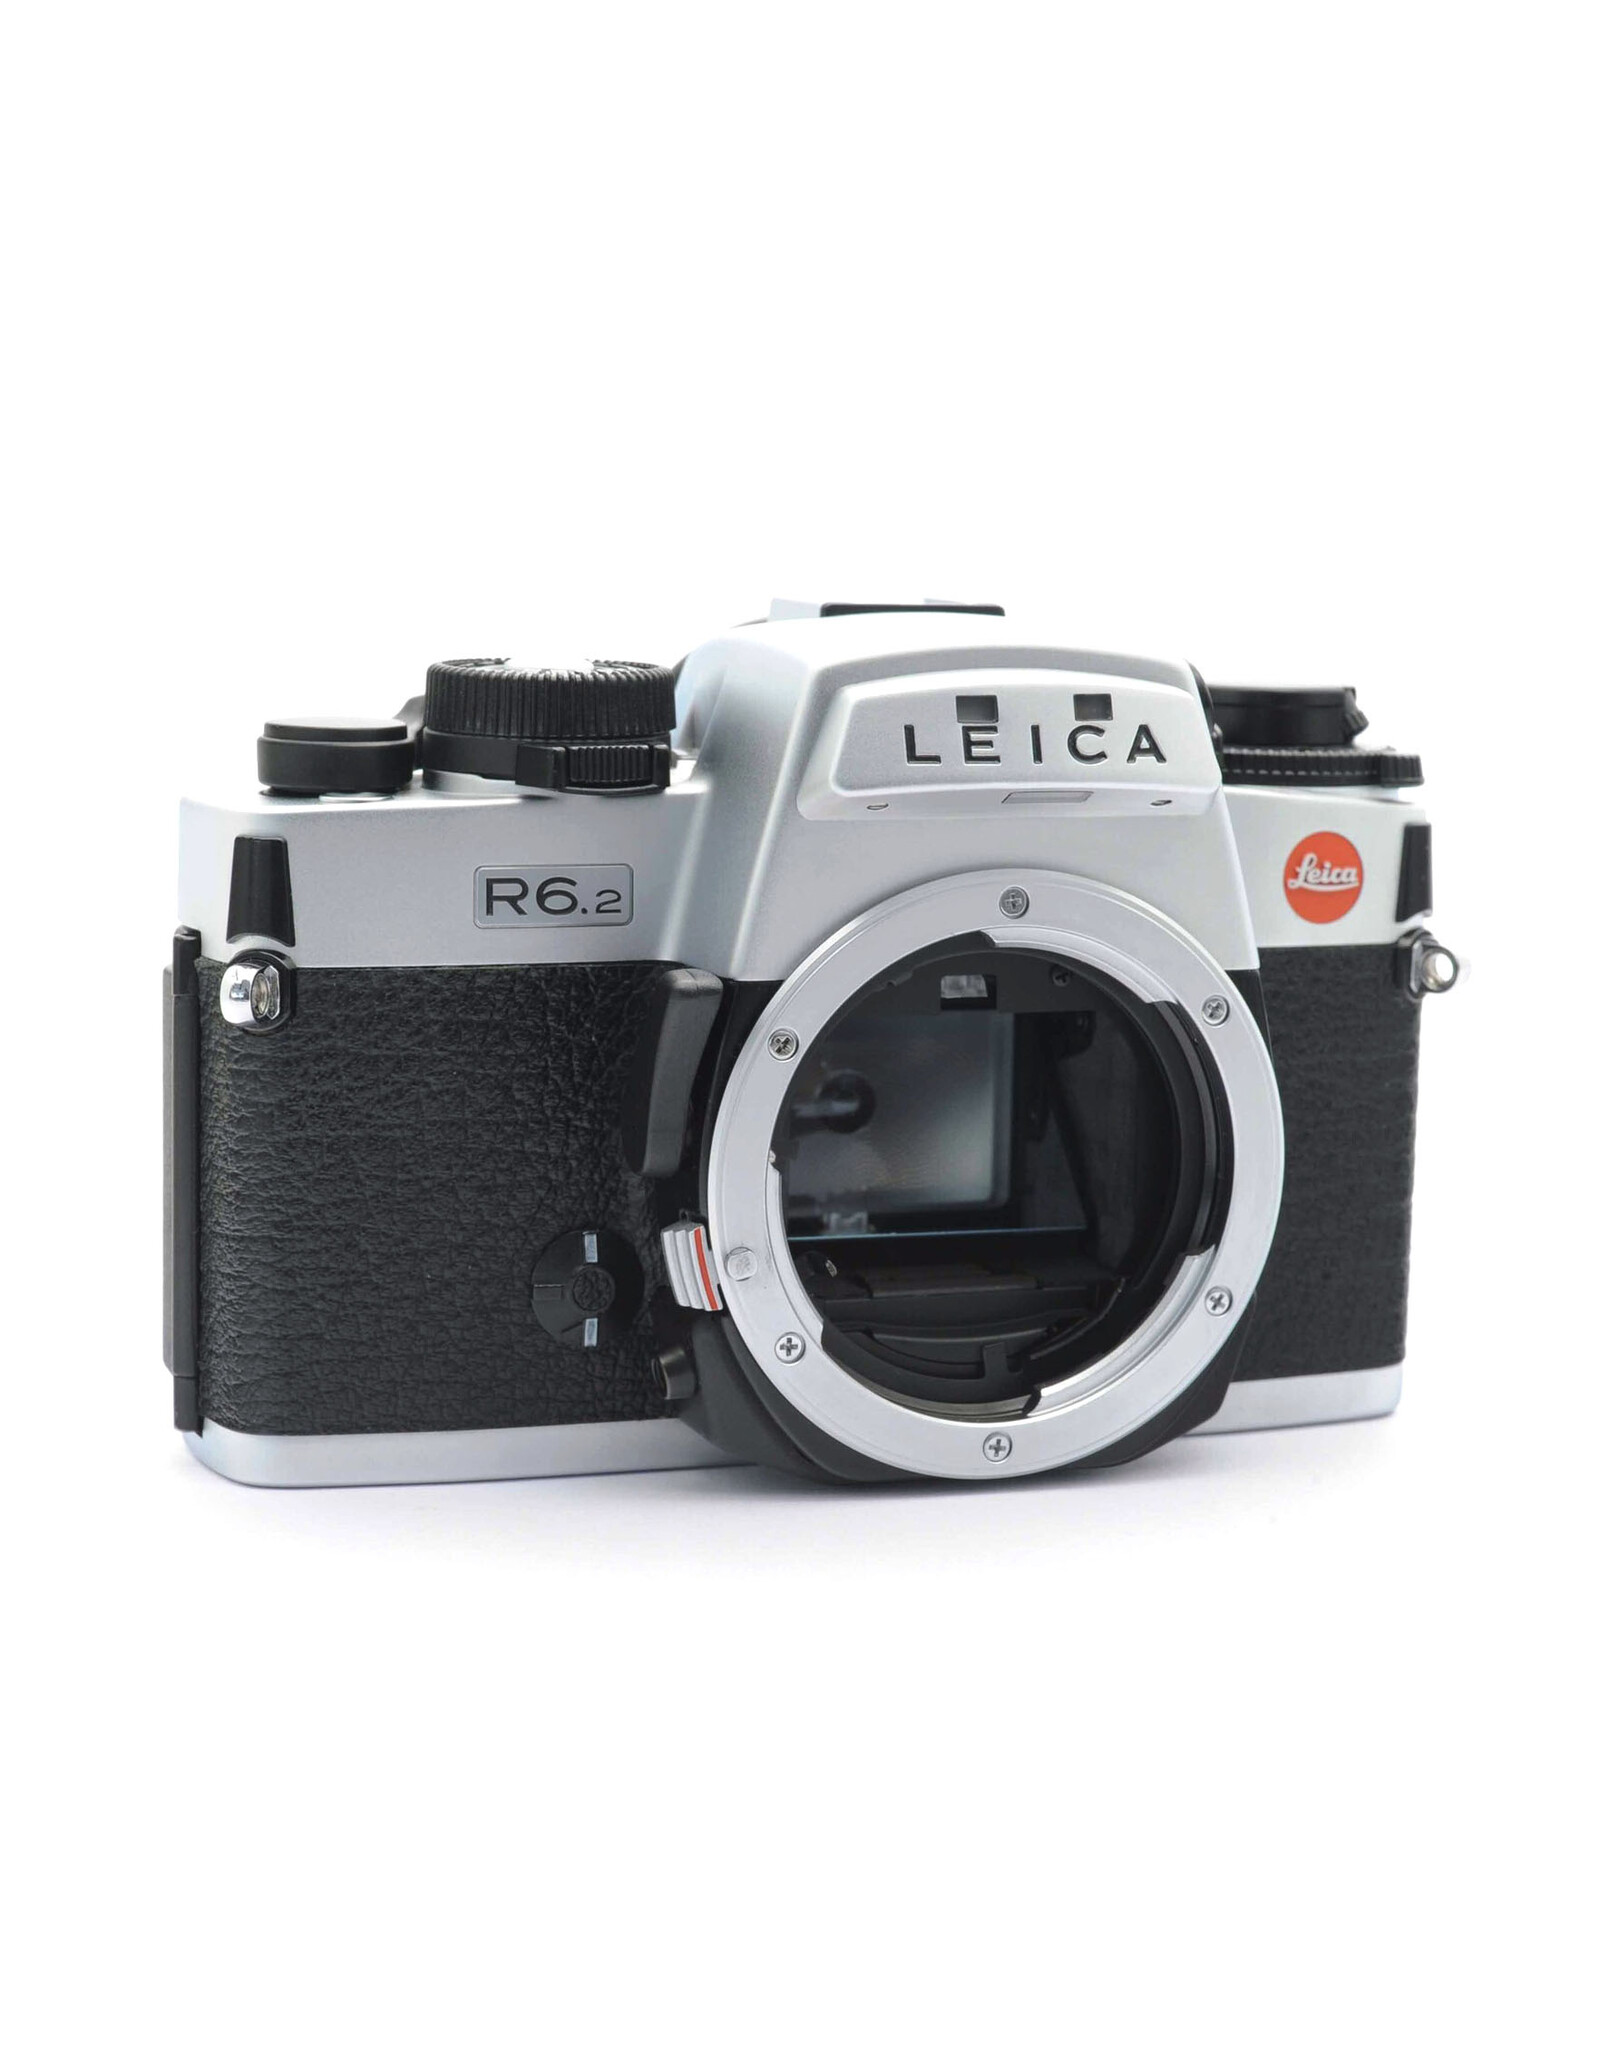 Leica Leica R6.2 Chrome   A3072802